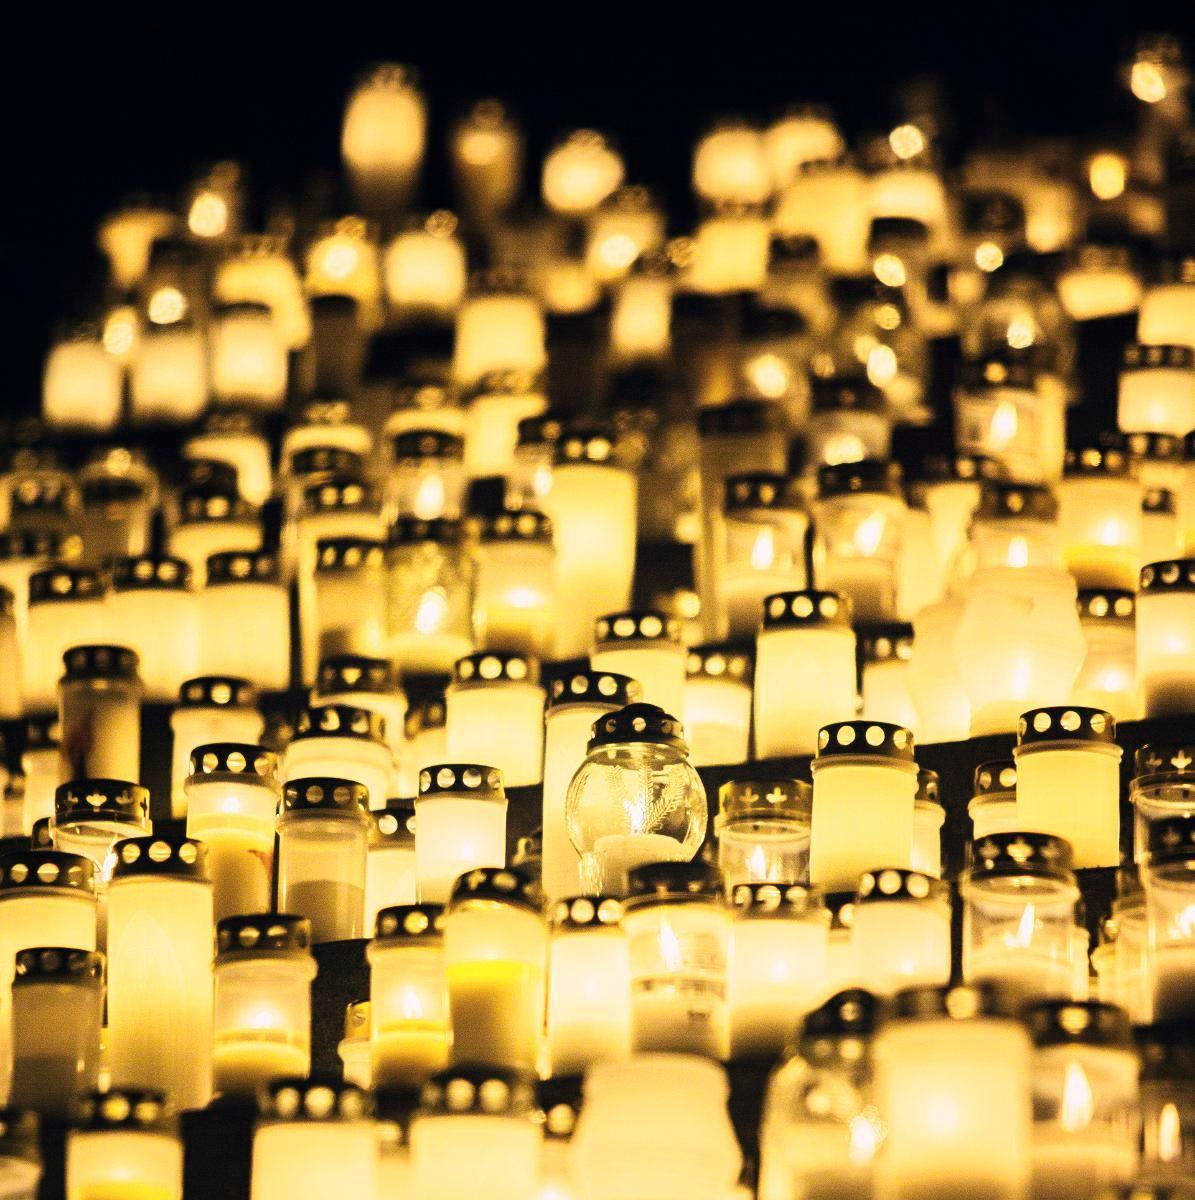 Kynttilät loistavat jouluna hautausmailla. Kuva: Jani laukkanen